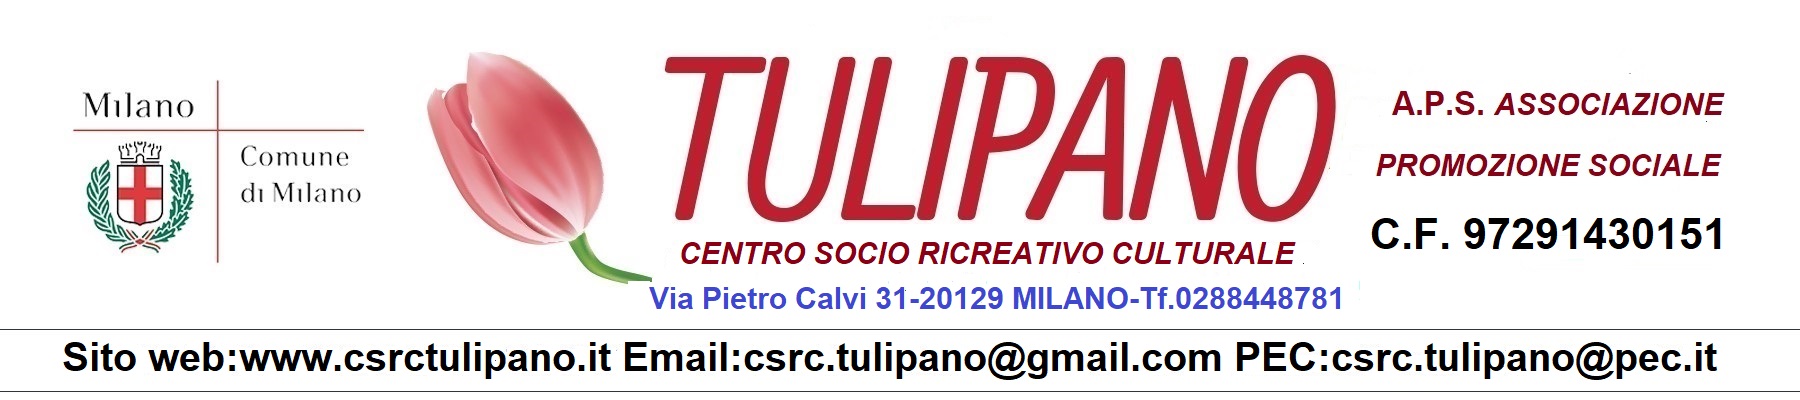 Centro Socio Ricreativo Culturale Tulipano